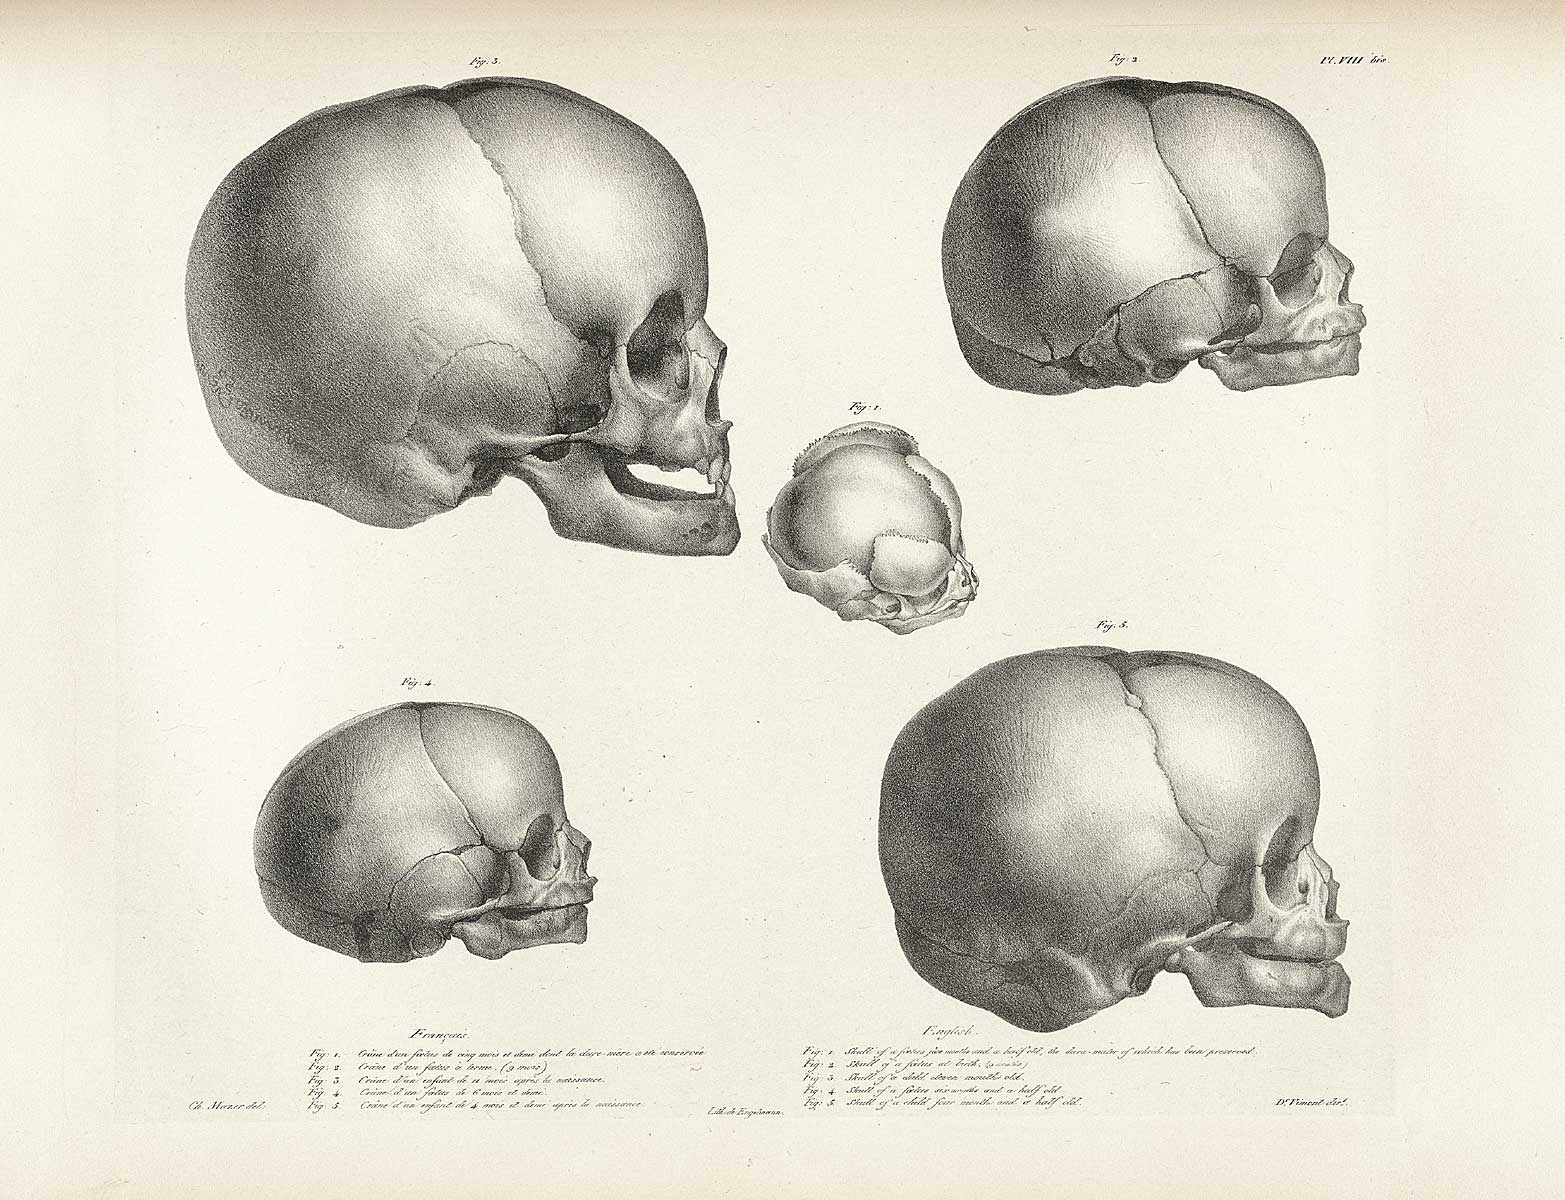 Table 8 of Joseph Vimont's Traité de phrénologie humaine et comparée, featuring the 5 skulls of fetus and children.